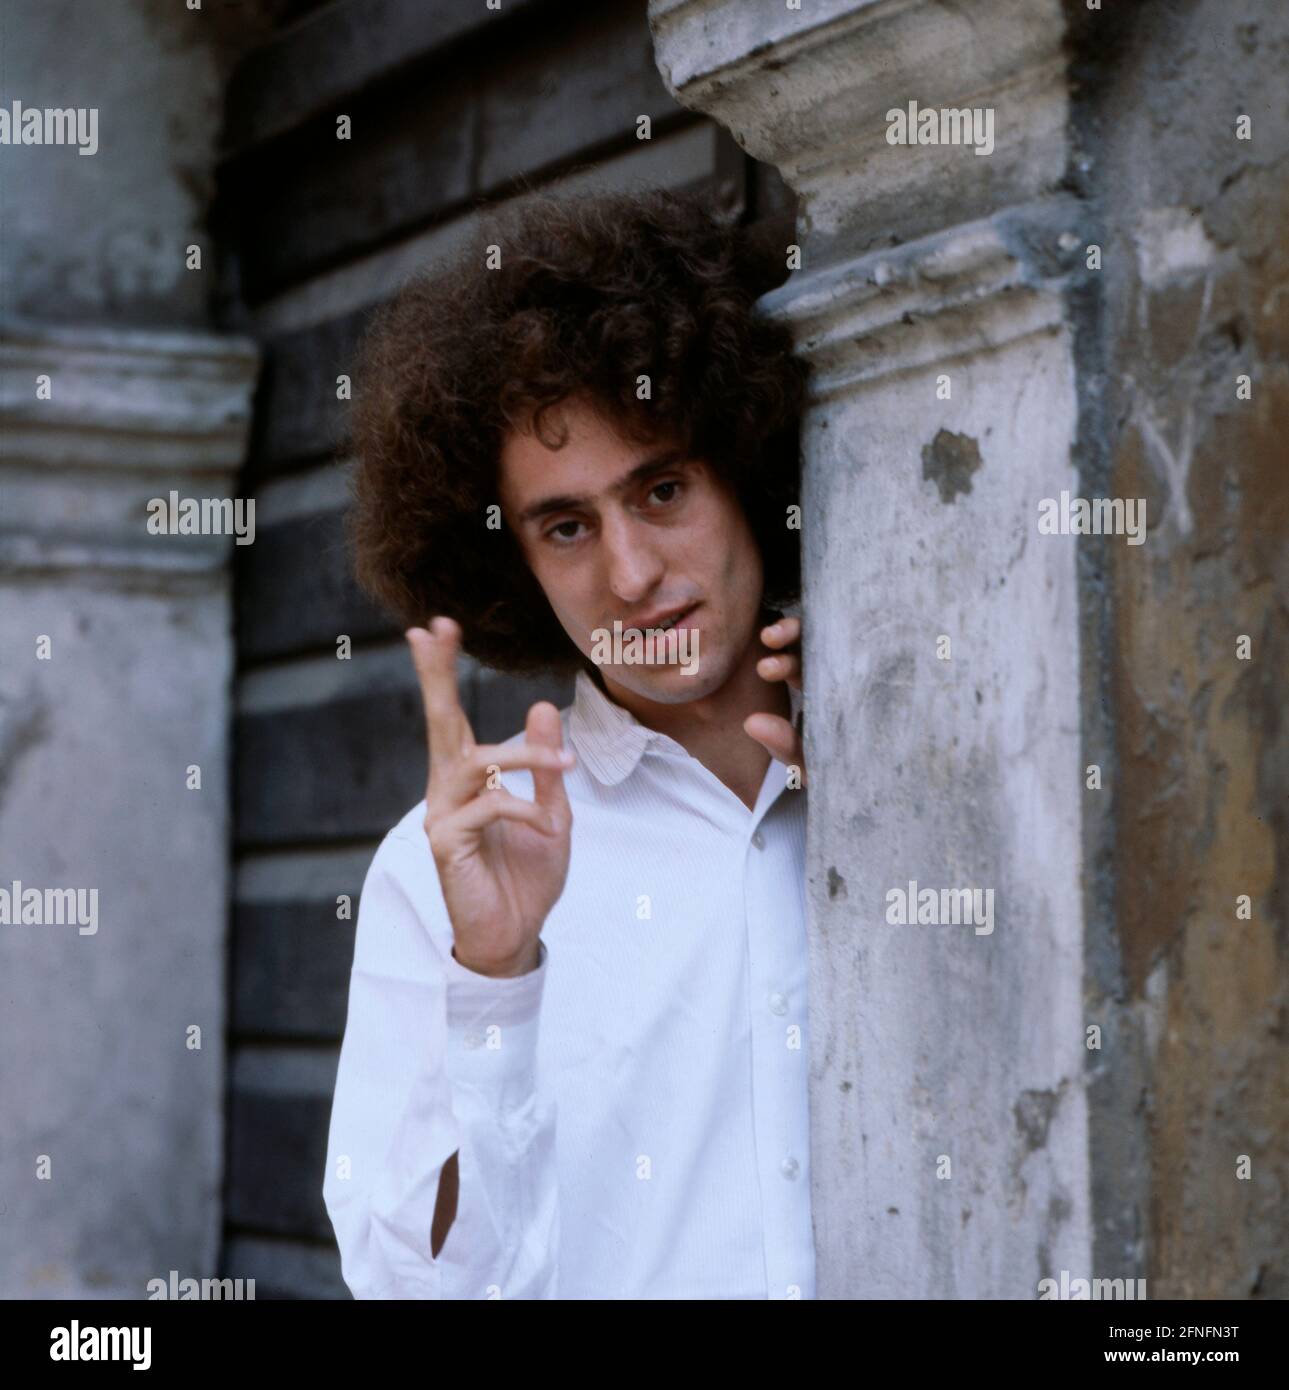 ANGELO BRANDUARDI, italienischer Musiker und Sänger, ein Cantautore, Portrait, 1982. ANGELO BRANDUARDI, italienischer Musiker und Sänger, A Cantautore, Portrait, 1982. Stockfoto